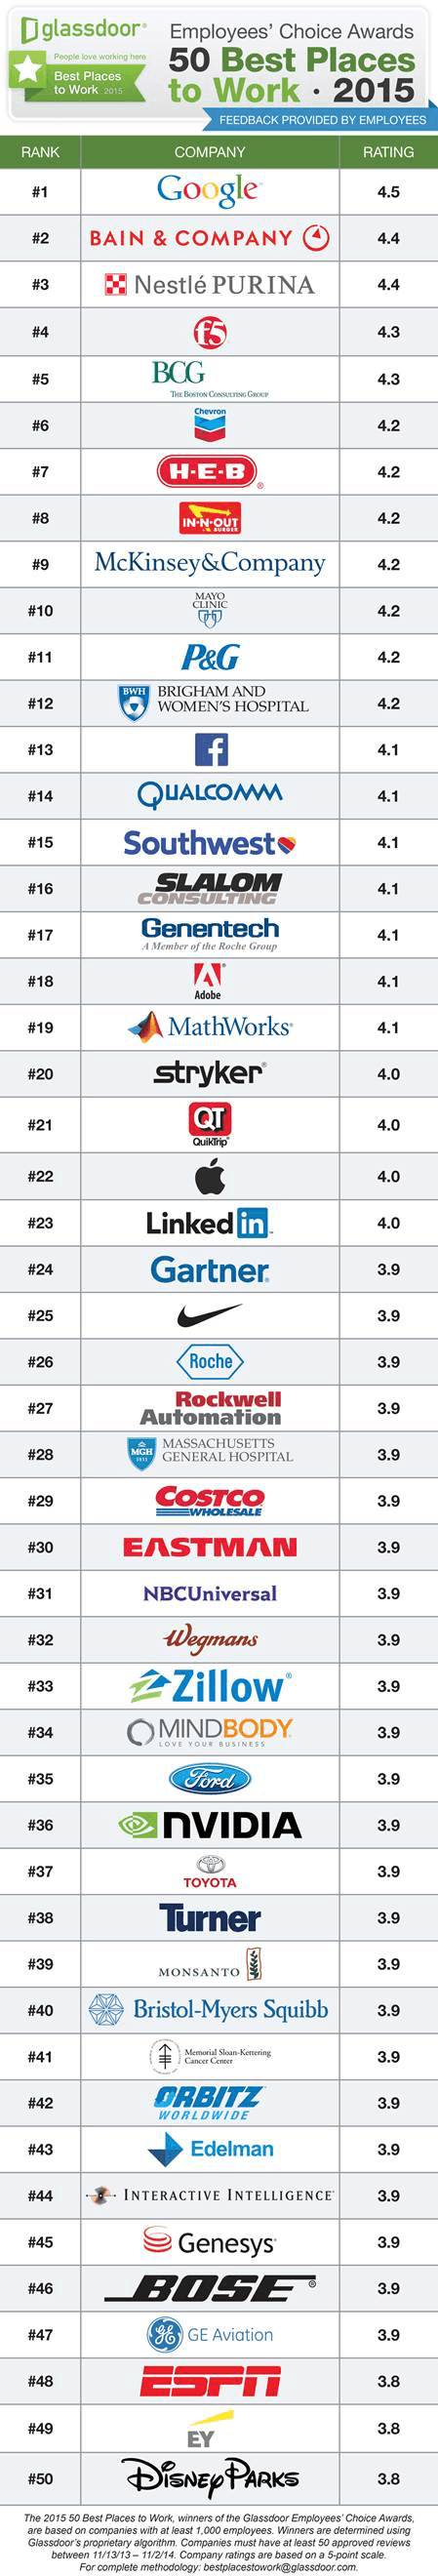 Glassdoor Top 50 Tech Employers of 2015